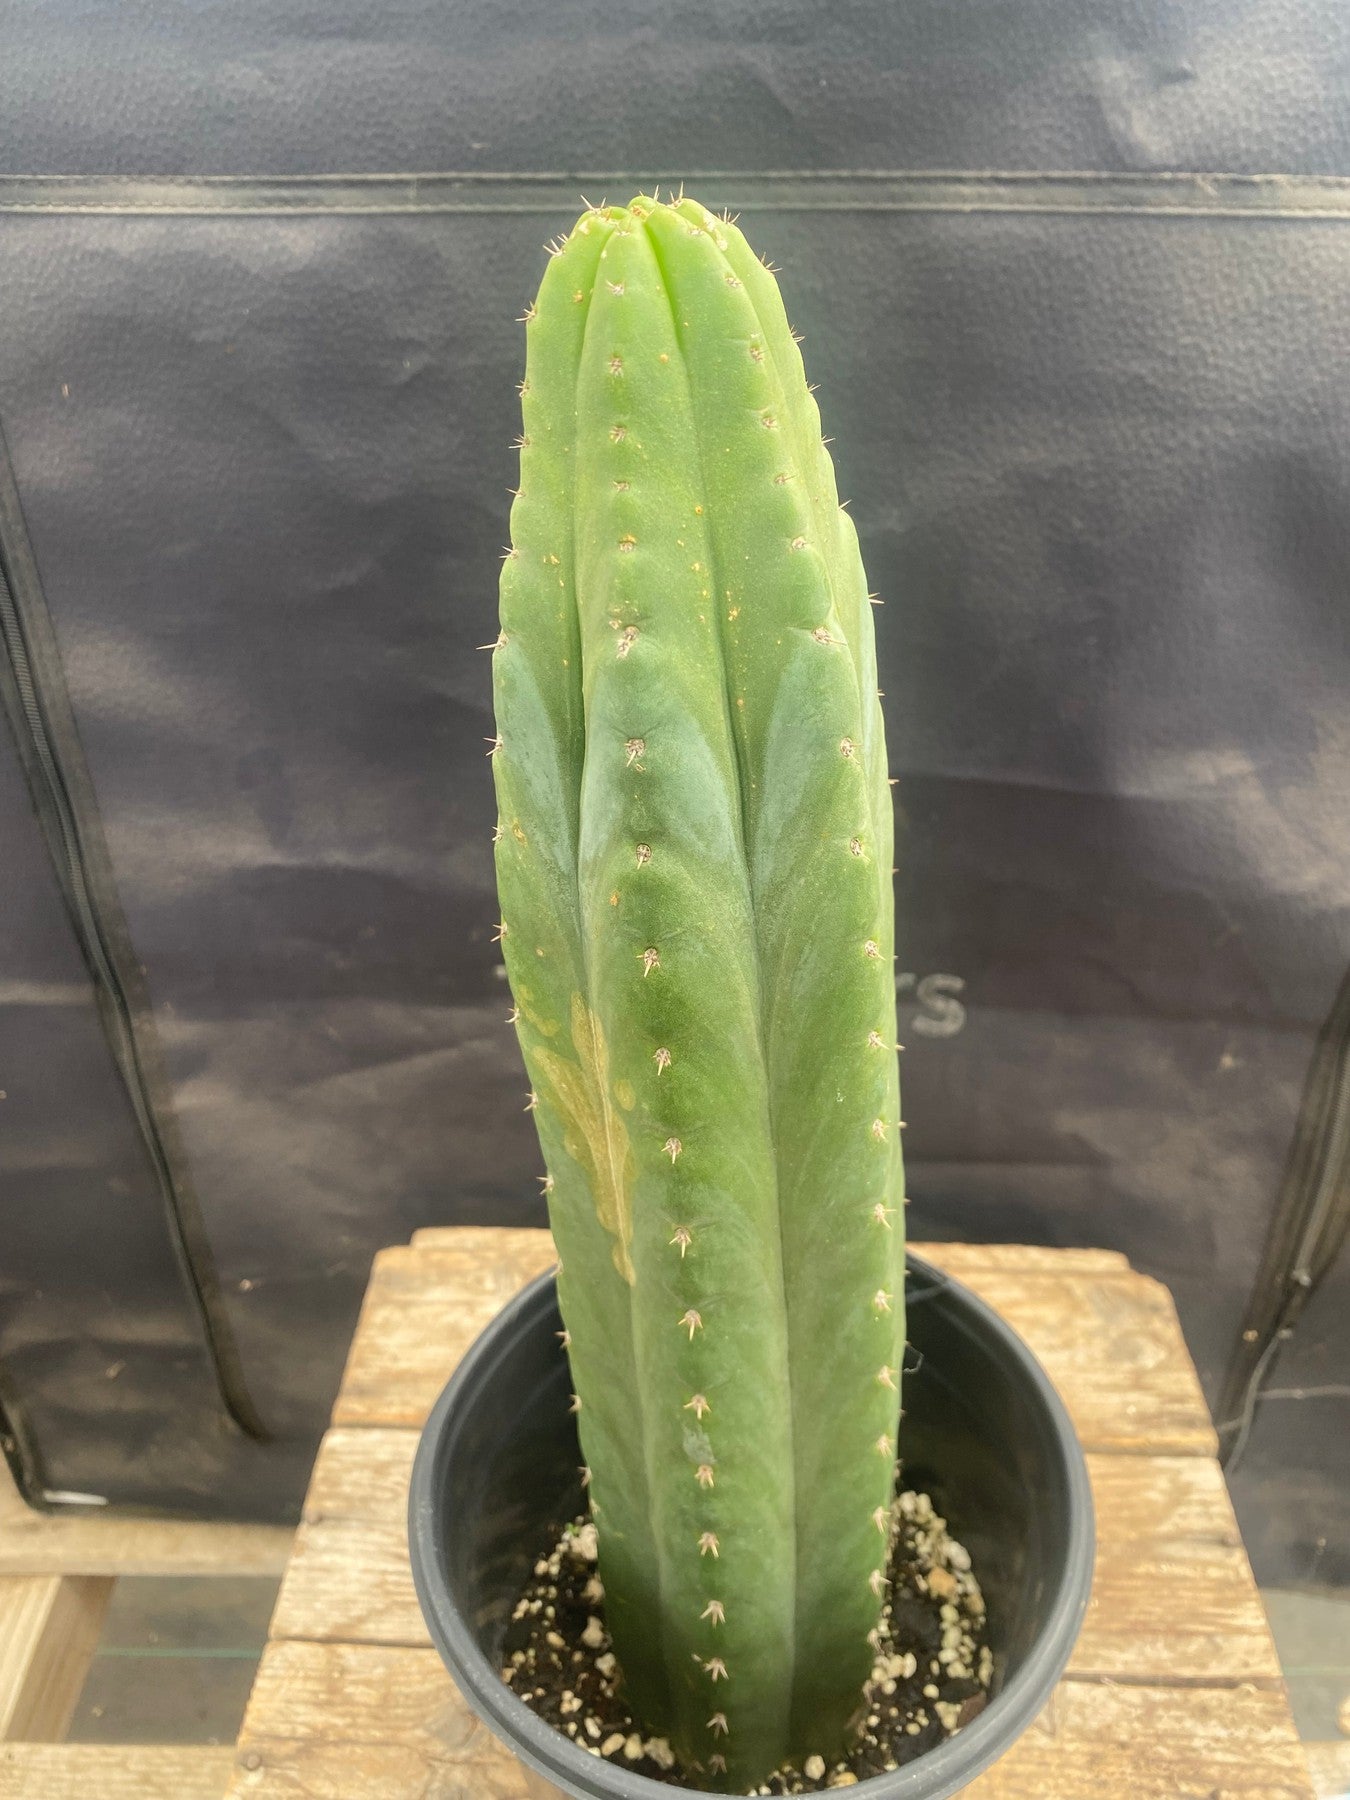 #EC46 EXACT Trichocereus Pachanoi "Awful" Cactus 10.5”-Cactus - Large - Exact-The Succulent Source